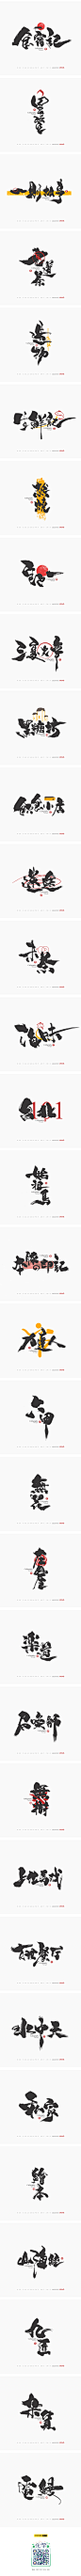 放浪时光-9-10月书法字形-字体传奇网-中国首个字体品牌设计师交流网